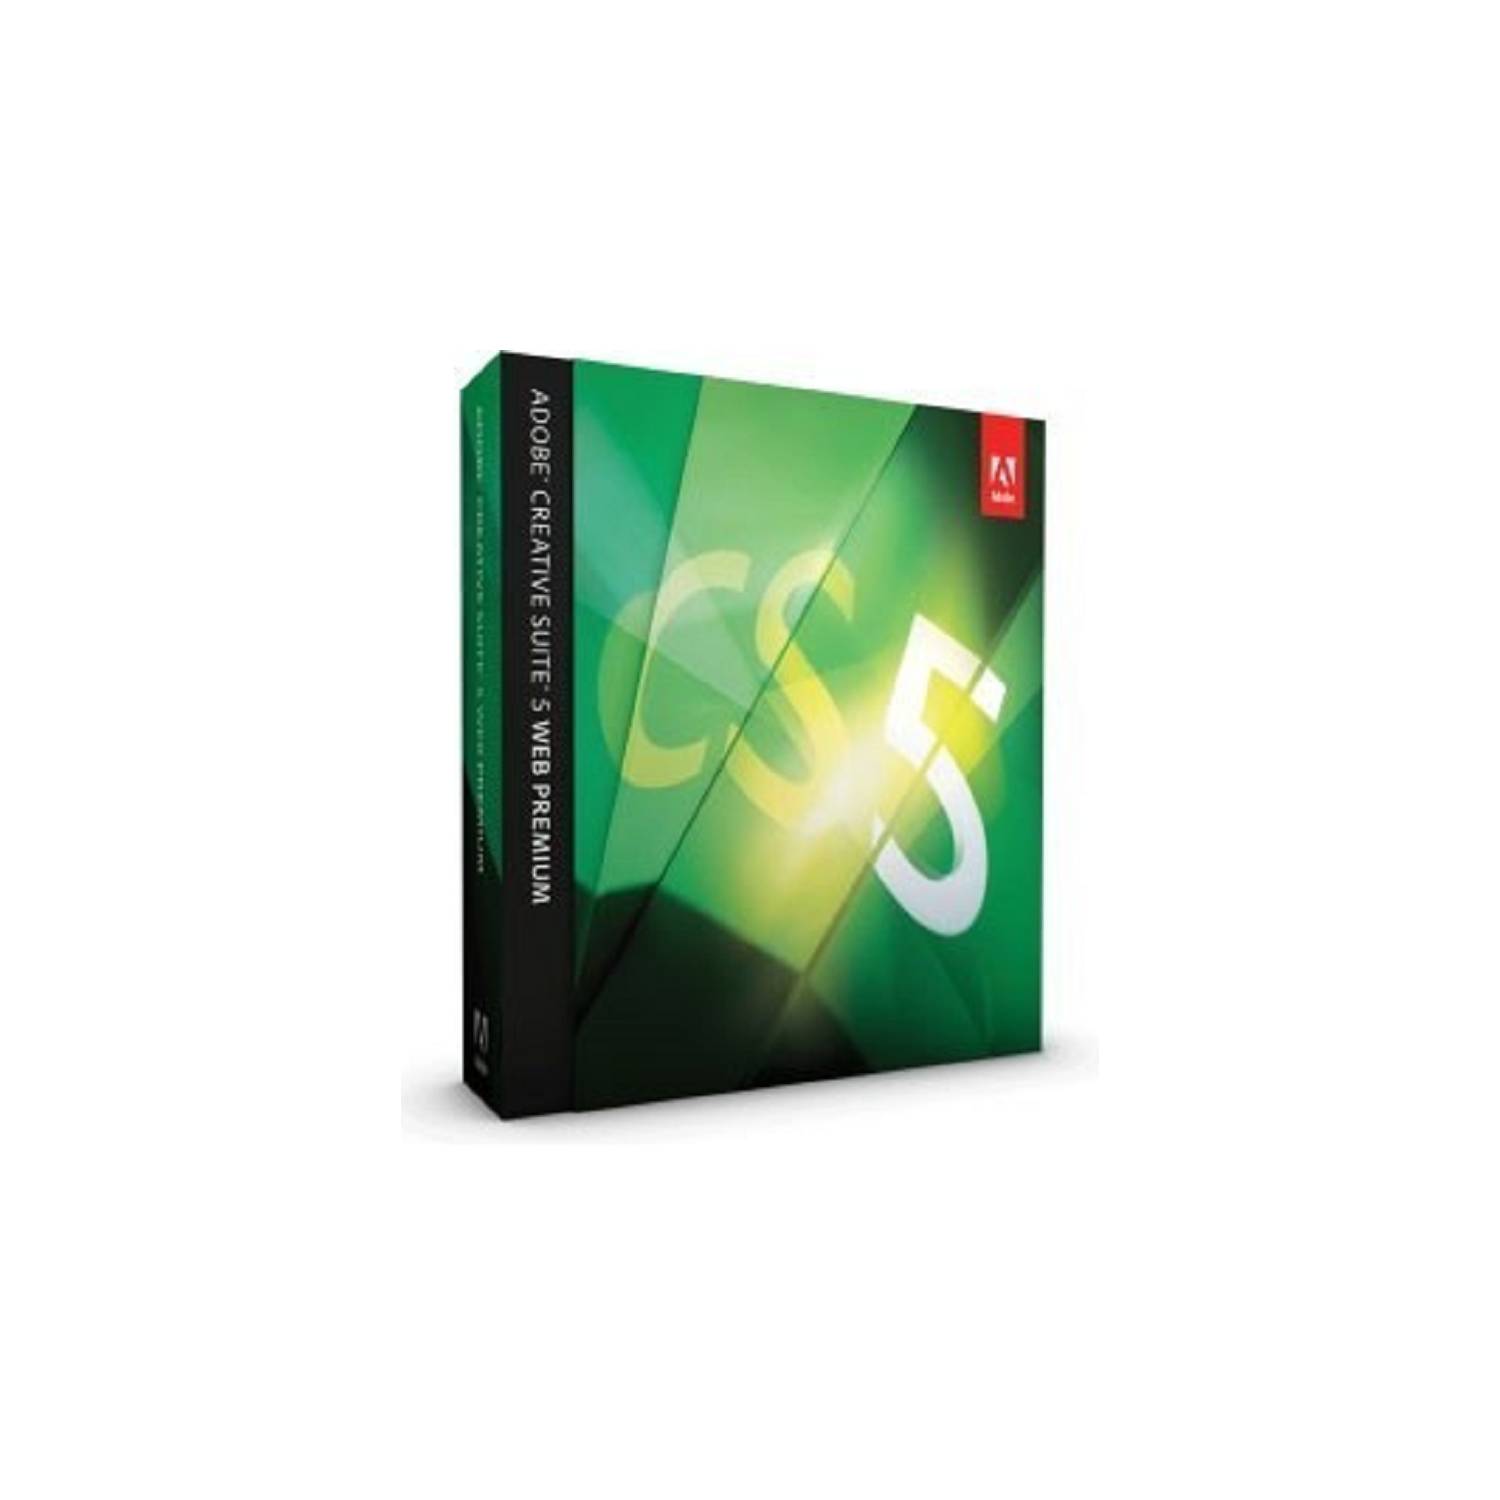 BAUL MAGICO Adobe Creative Suite 5.5 Web Premium Cs5.5 Mac B19